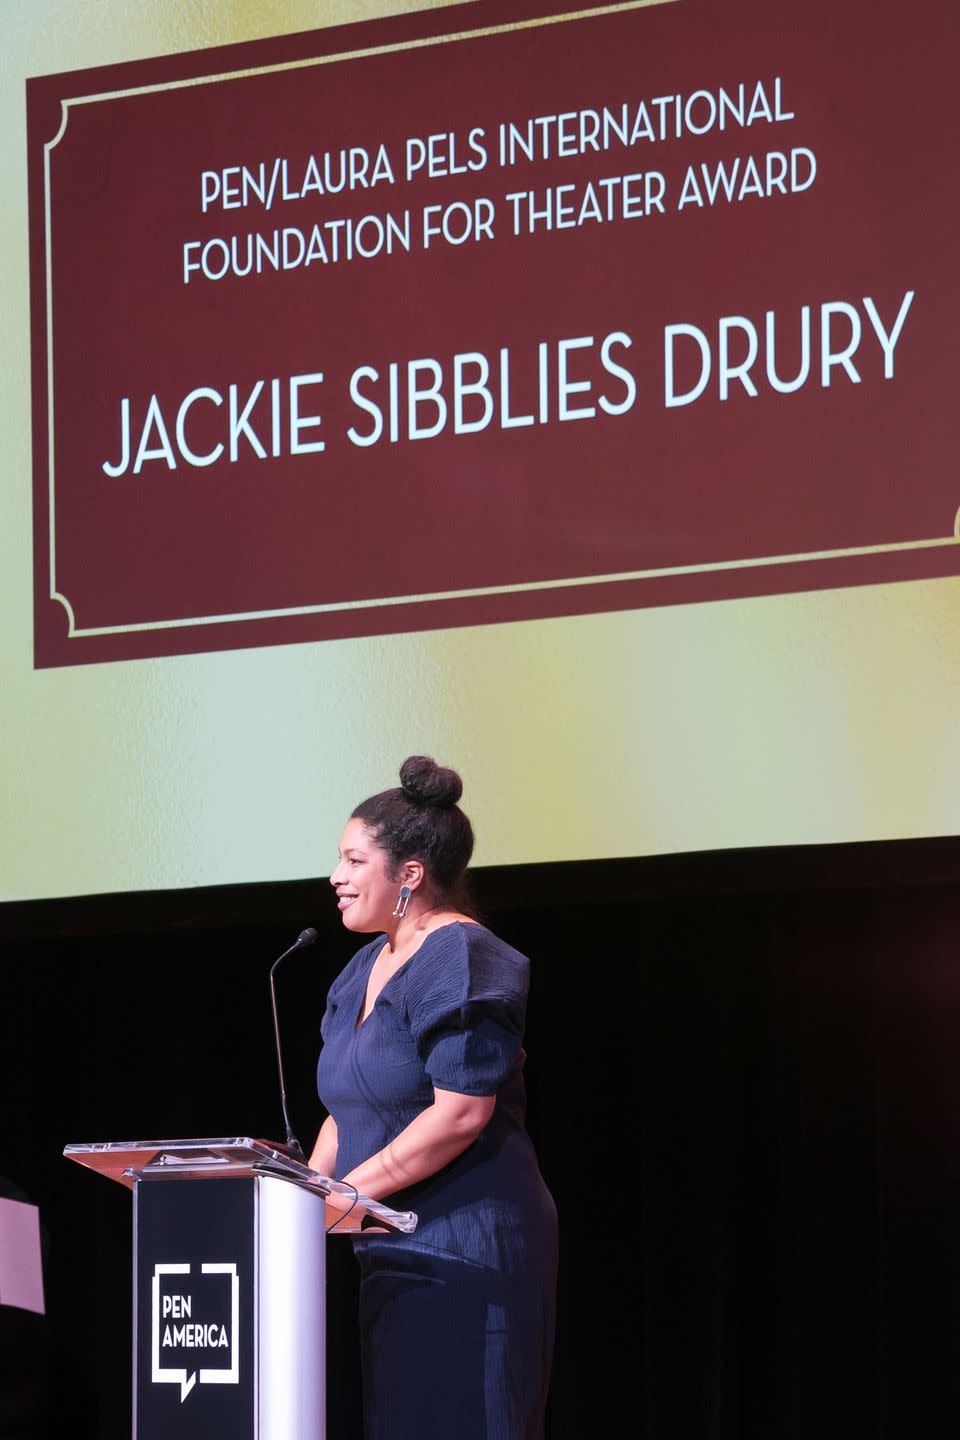 Jackie Sibblies Drury